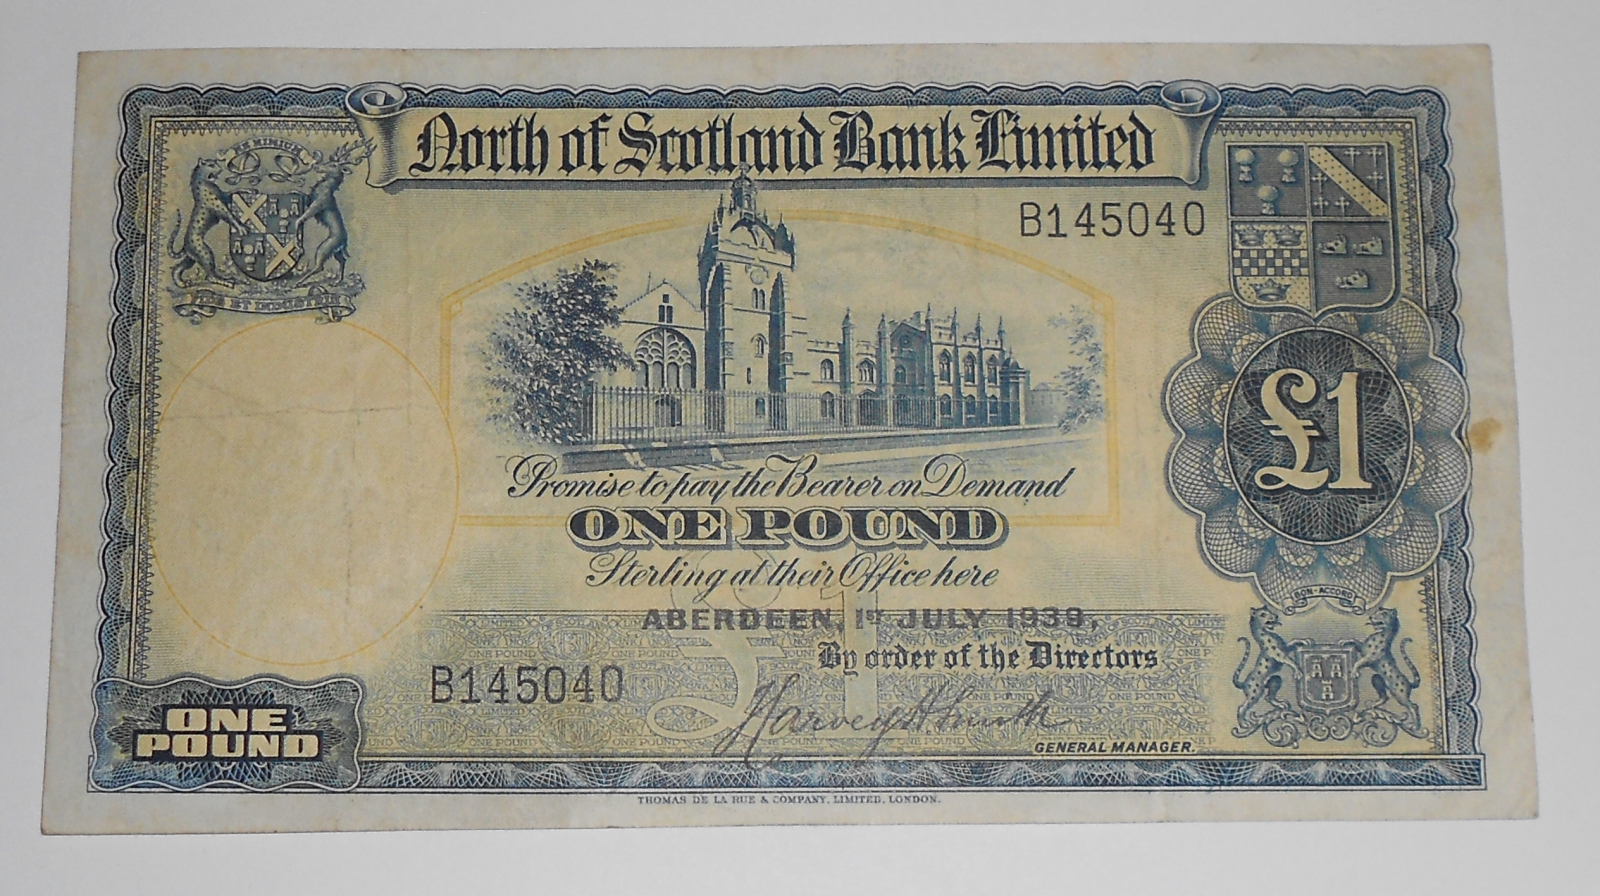 Skotsko 1 Pound 1939